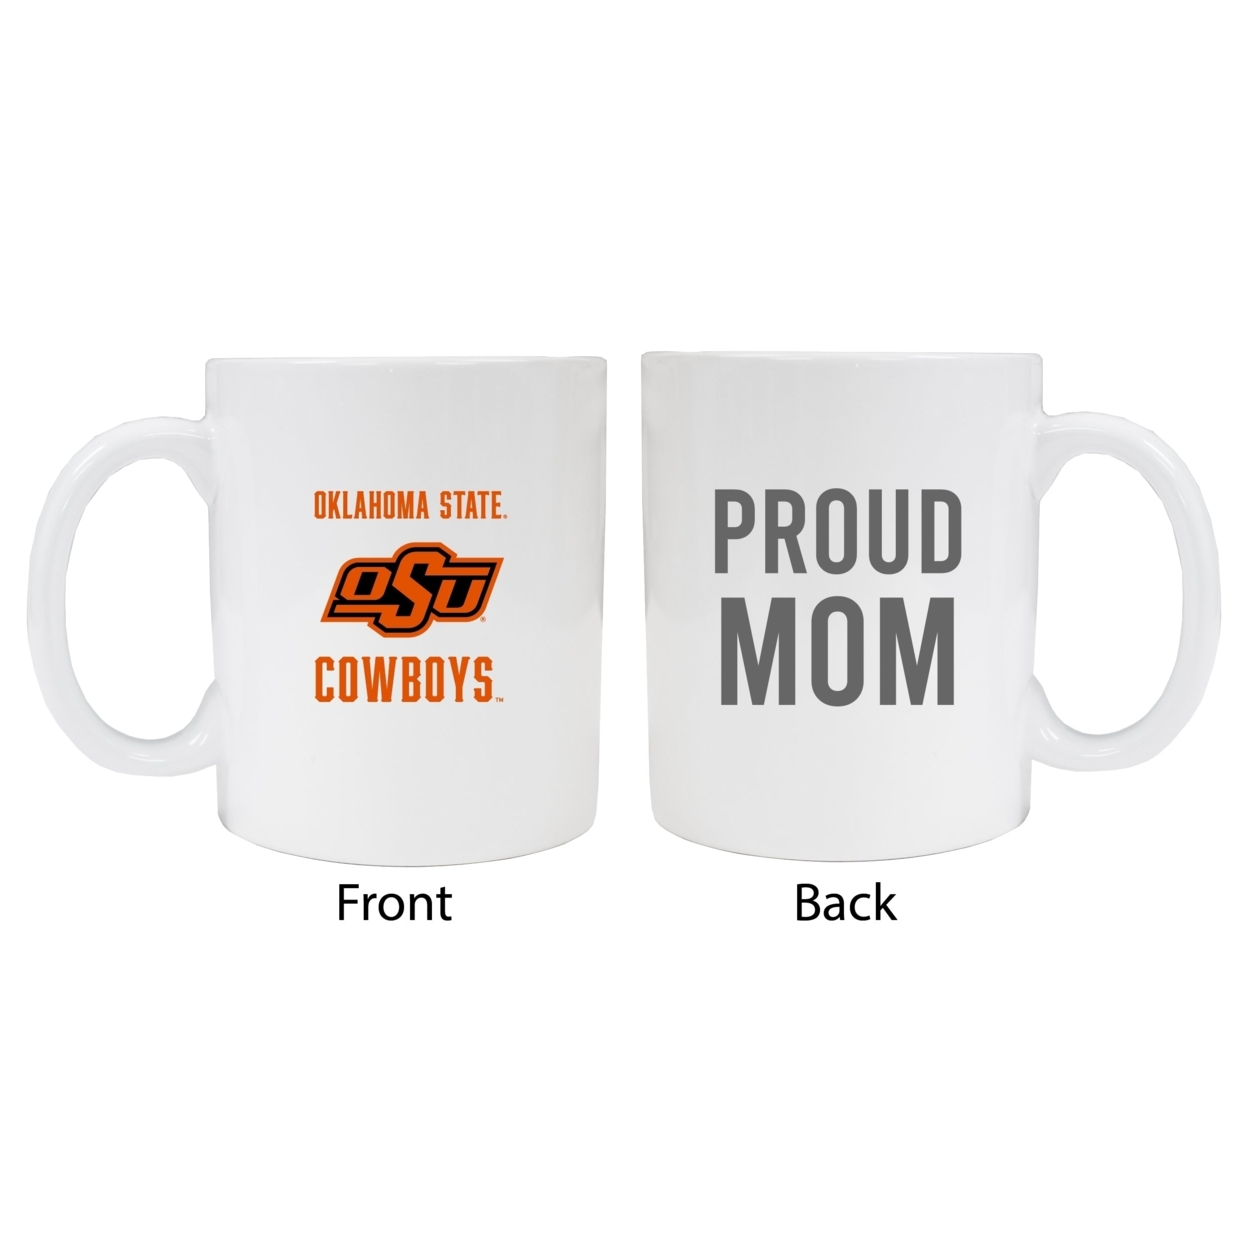 Oklahoma State Cowboys Proud Mom Ceramic Coffee Mug - White (2 Pack)